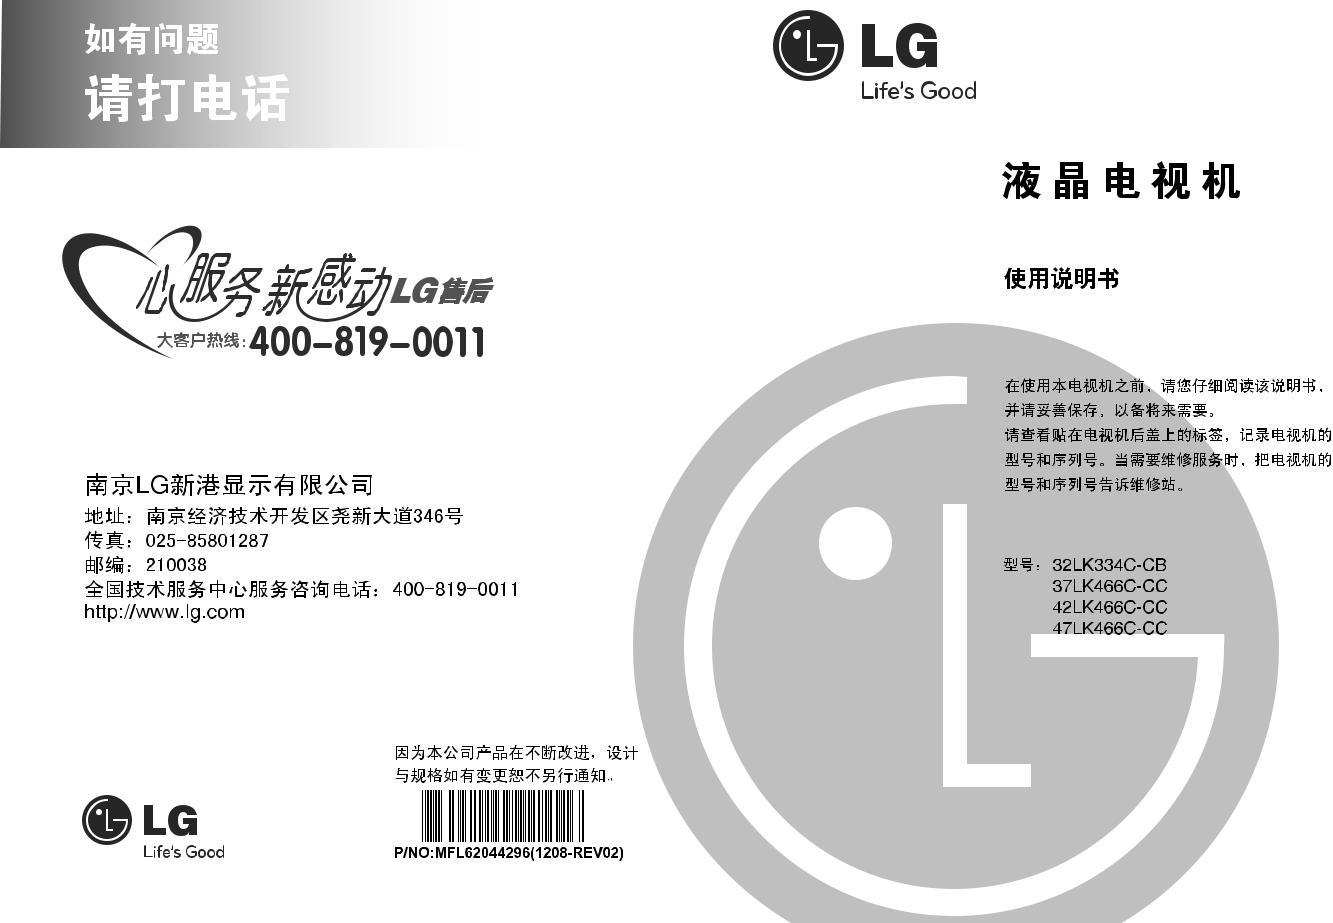 LG 42LK466C, 37LK466C, 32LK334C, 47LK466C Product Manual